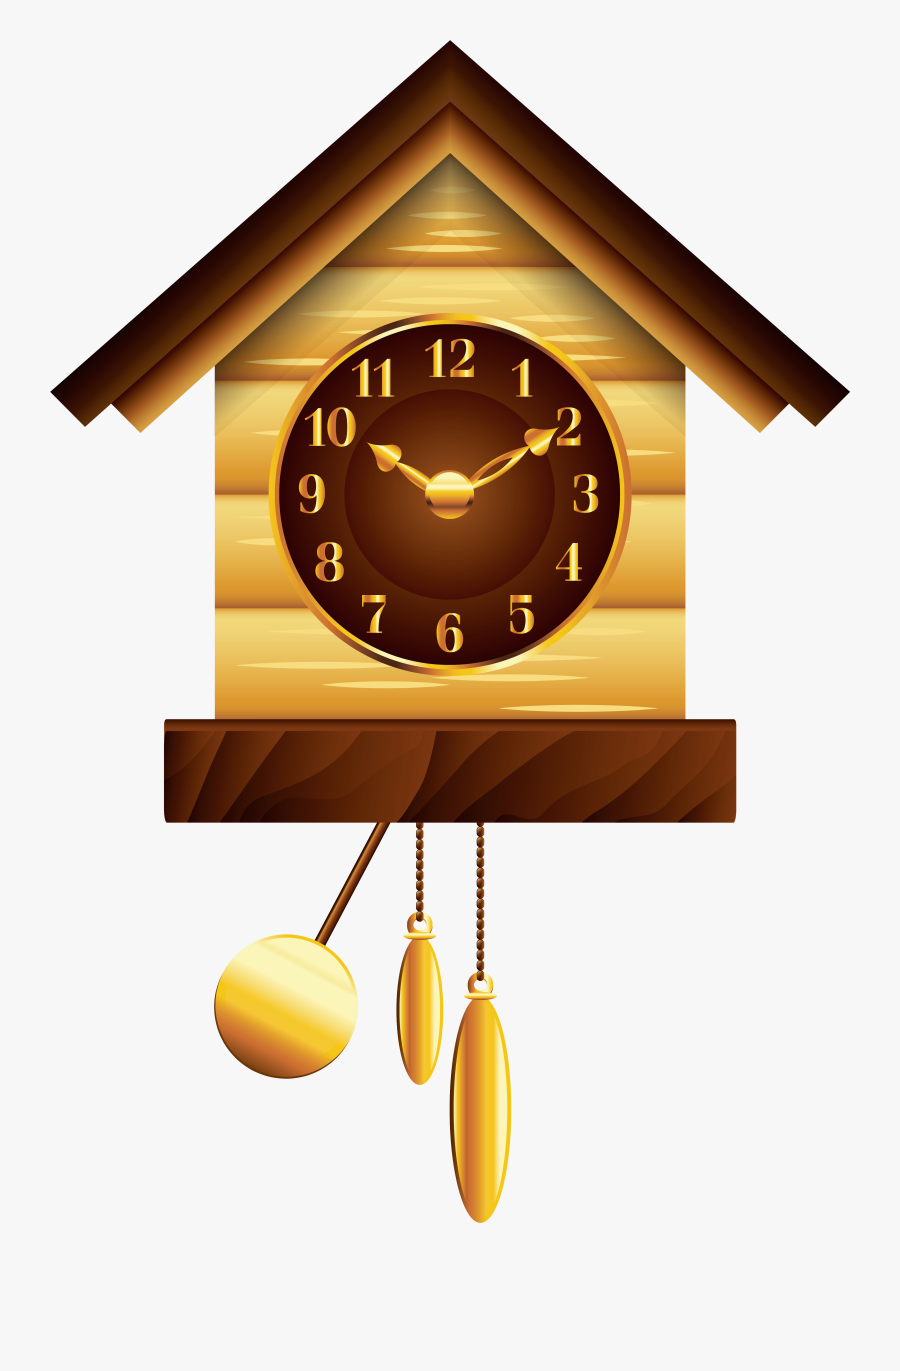 Cuckoo Clock Png Clip Art - Cuckoo Clock Clipart, Transparent Clipart